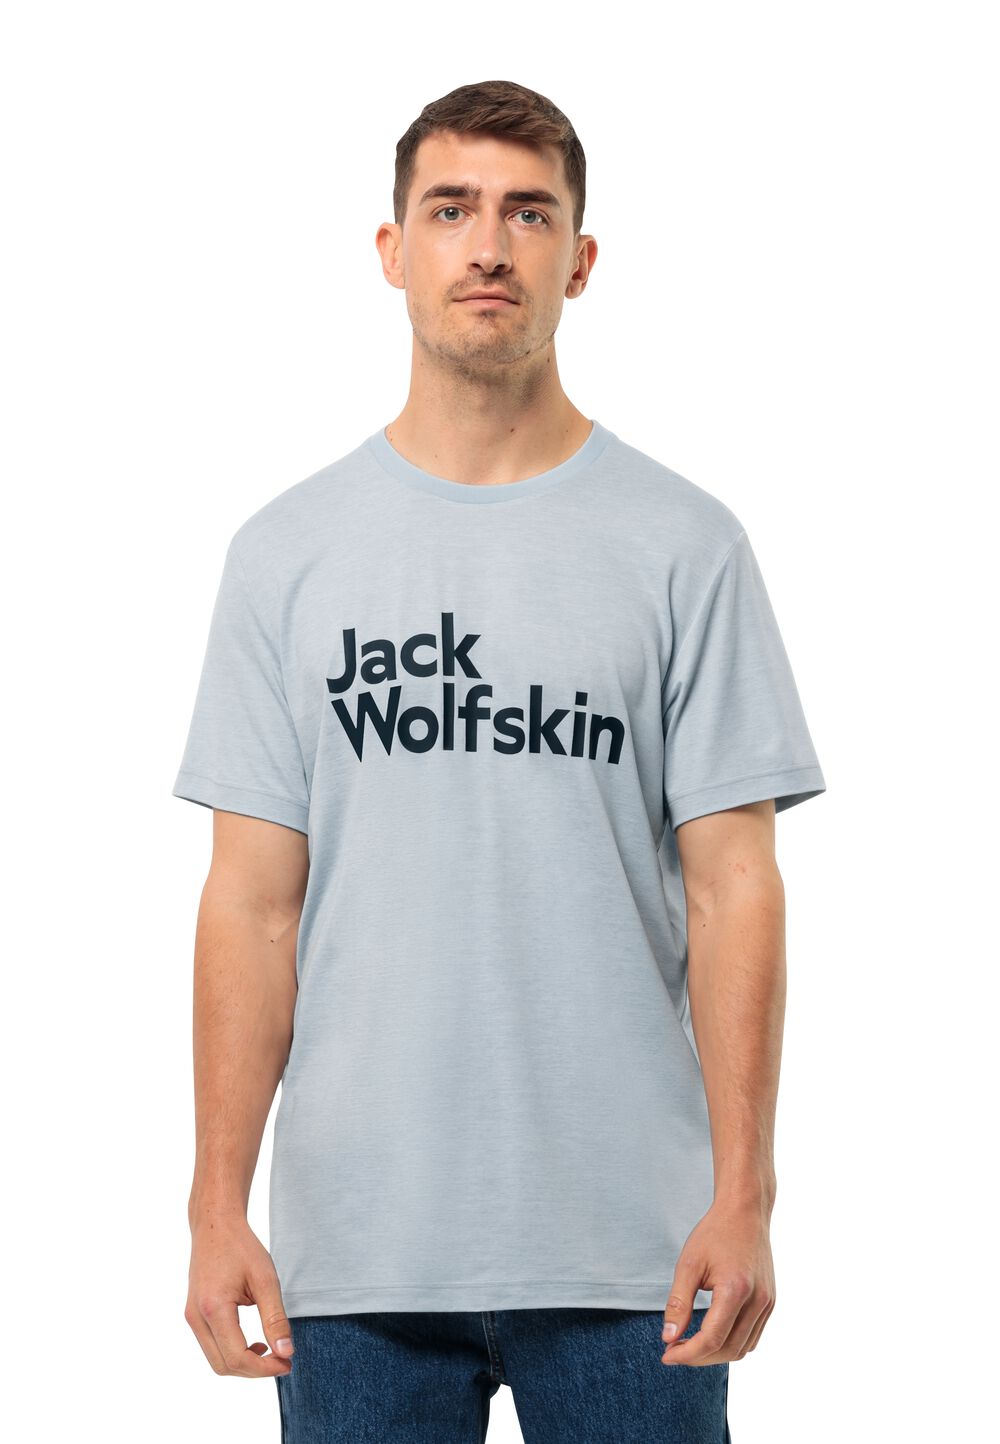 Jack Wolfskin Funktionsshirt Herren Brand T-Shirt Men L soft blue soft blue von Jack Wolfskin